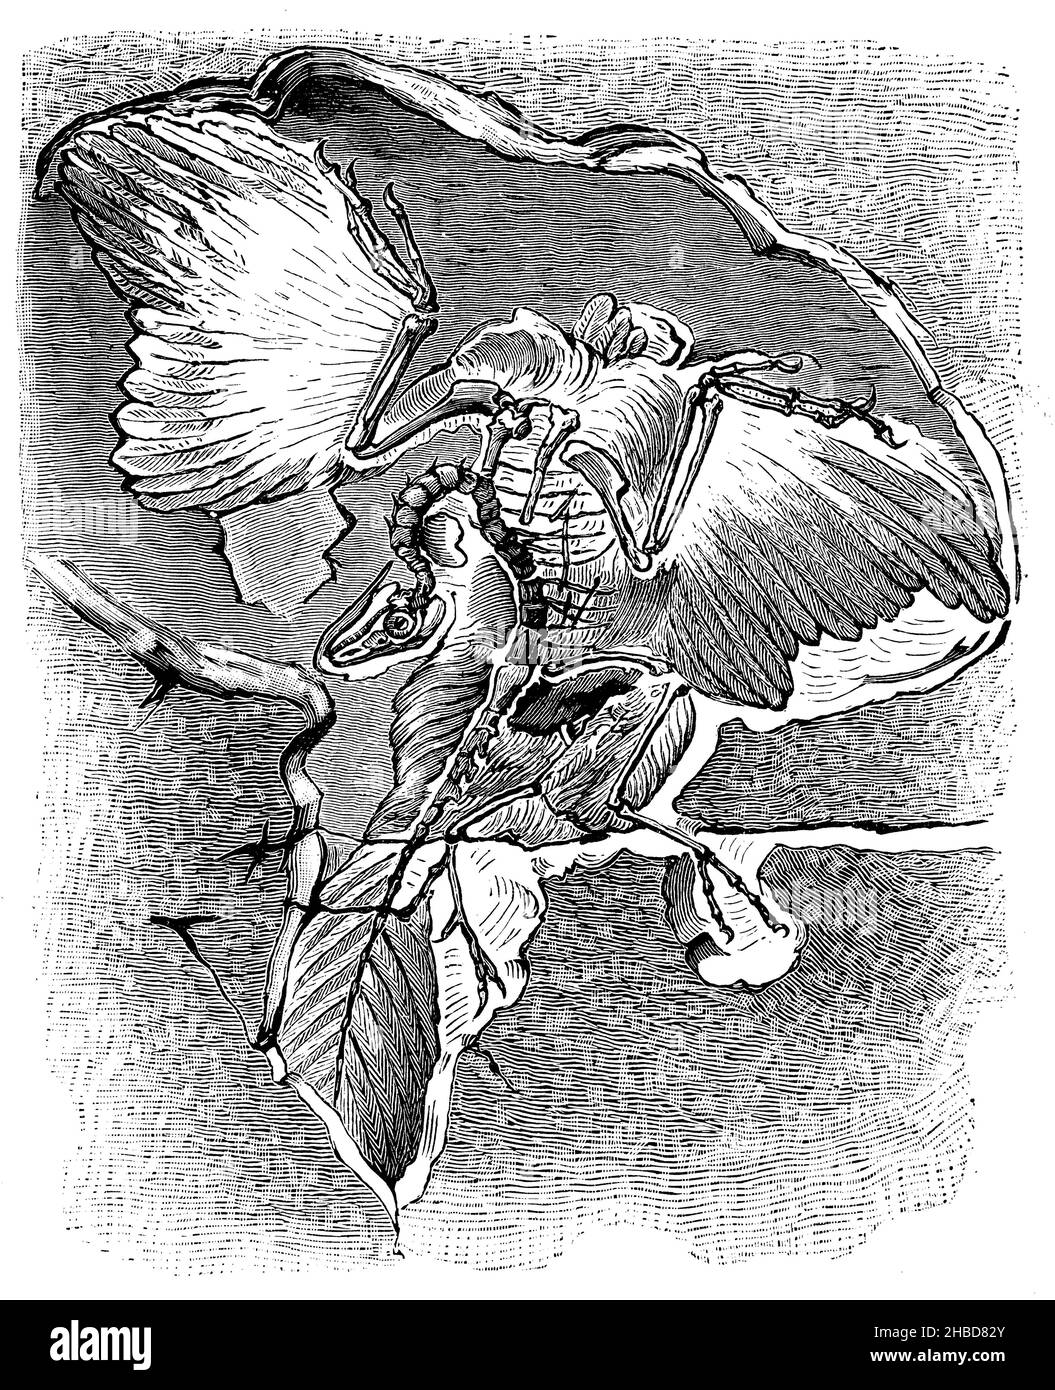 Archaeopteryx macrurus, ein prähistorischer Vogel, gefunden in den Plattenkalk-Felsen von Solnhofen, , anonym (Evolutionsgeschichte Buch, 1890), Archaeopteryx macrurus, ein Urvogel, im Plattenkalkgestein von Solnhofen gefunden, Archaeopteryx macrurus, un oiseau préhistorique, trouvé dans le calcnaire en plahofen Stockfoto